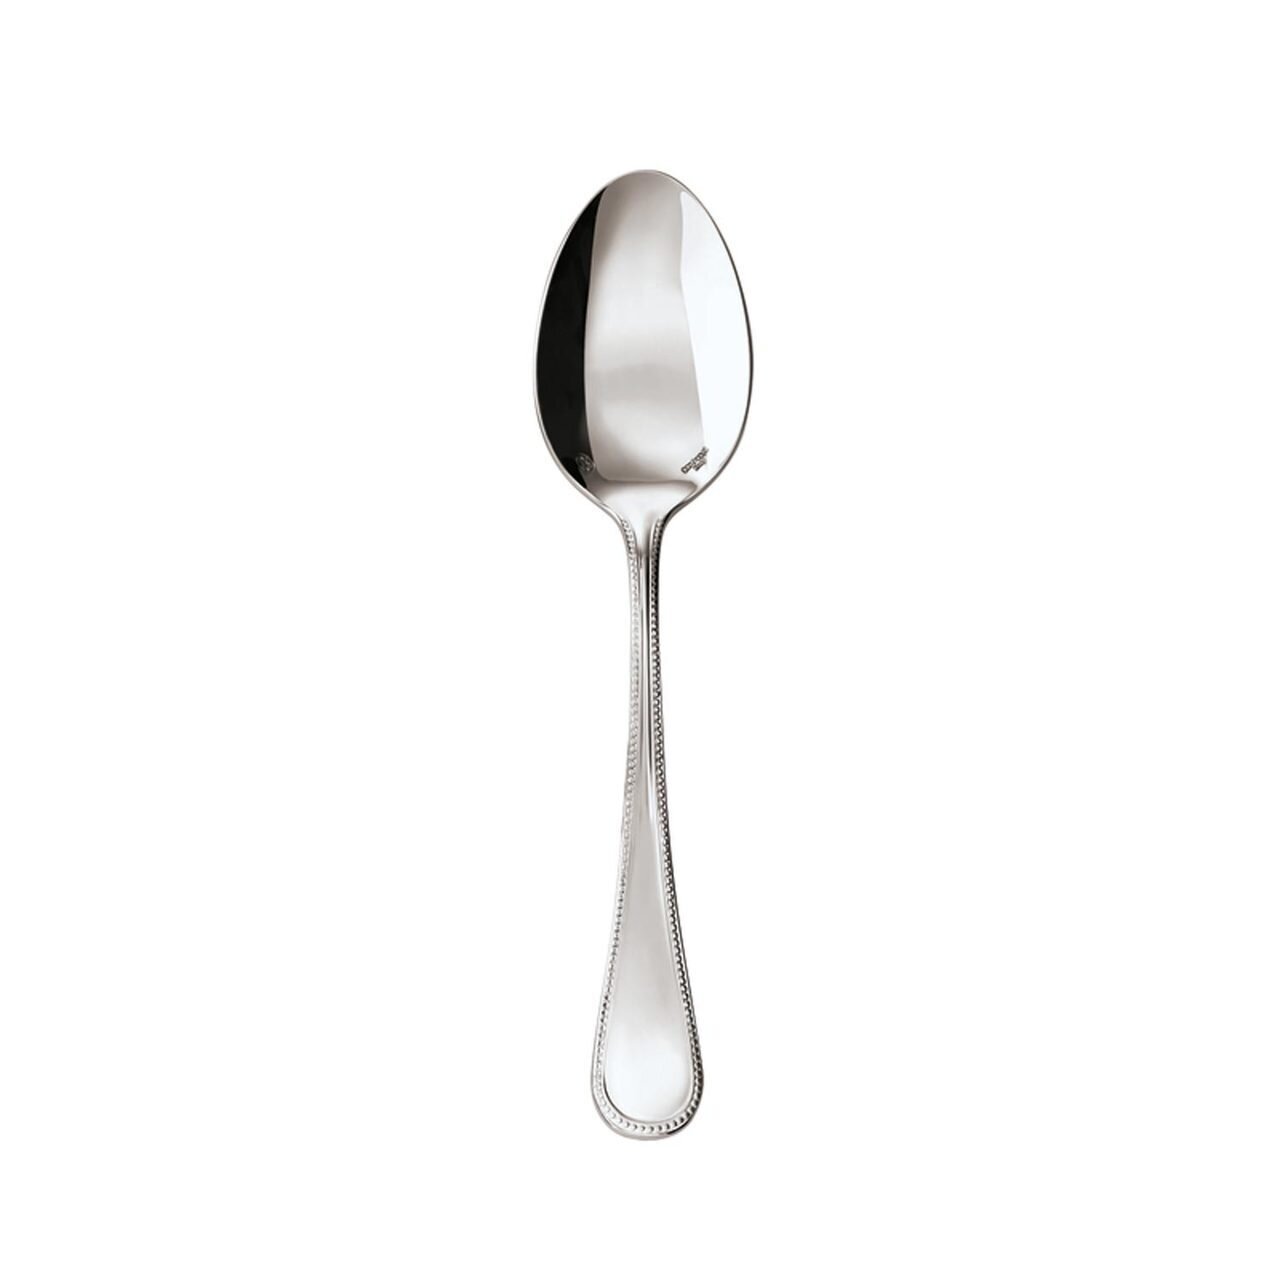 Sambonet Perles Table Spoon 52502-01